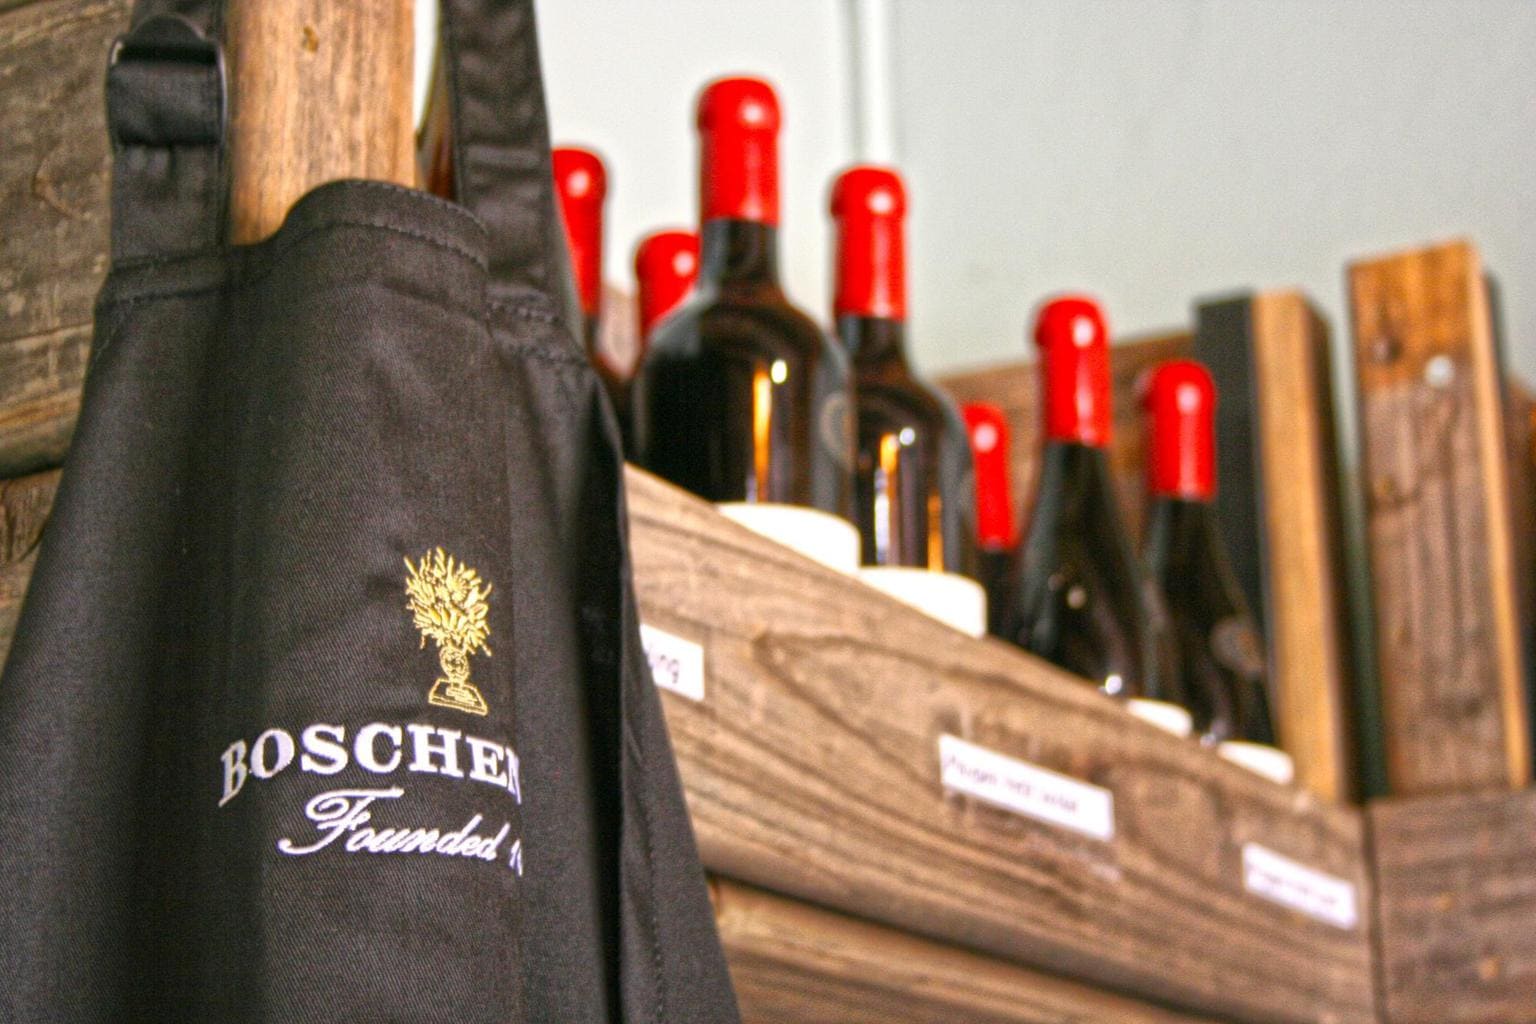 Boschendal wines